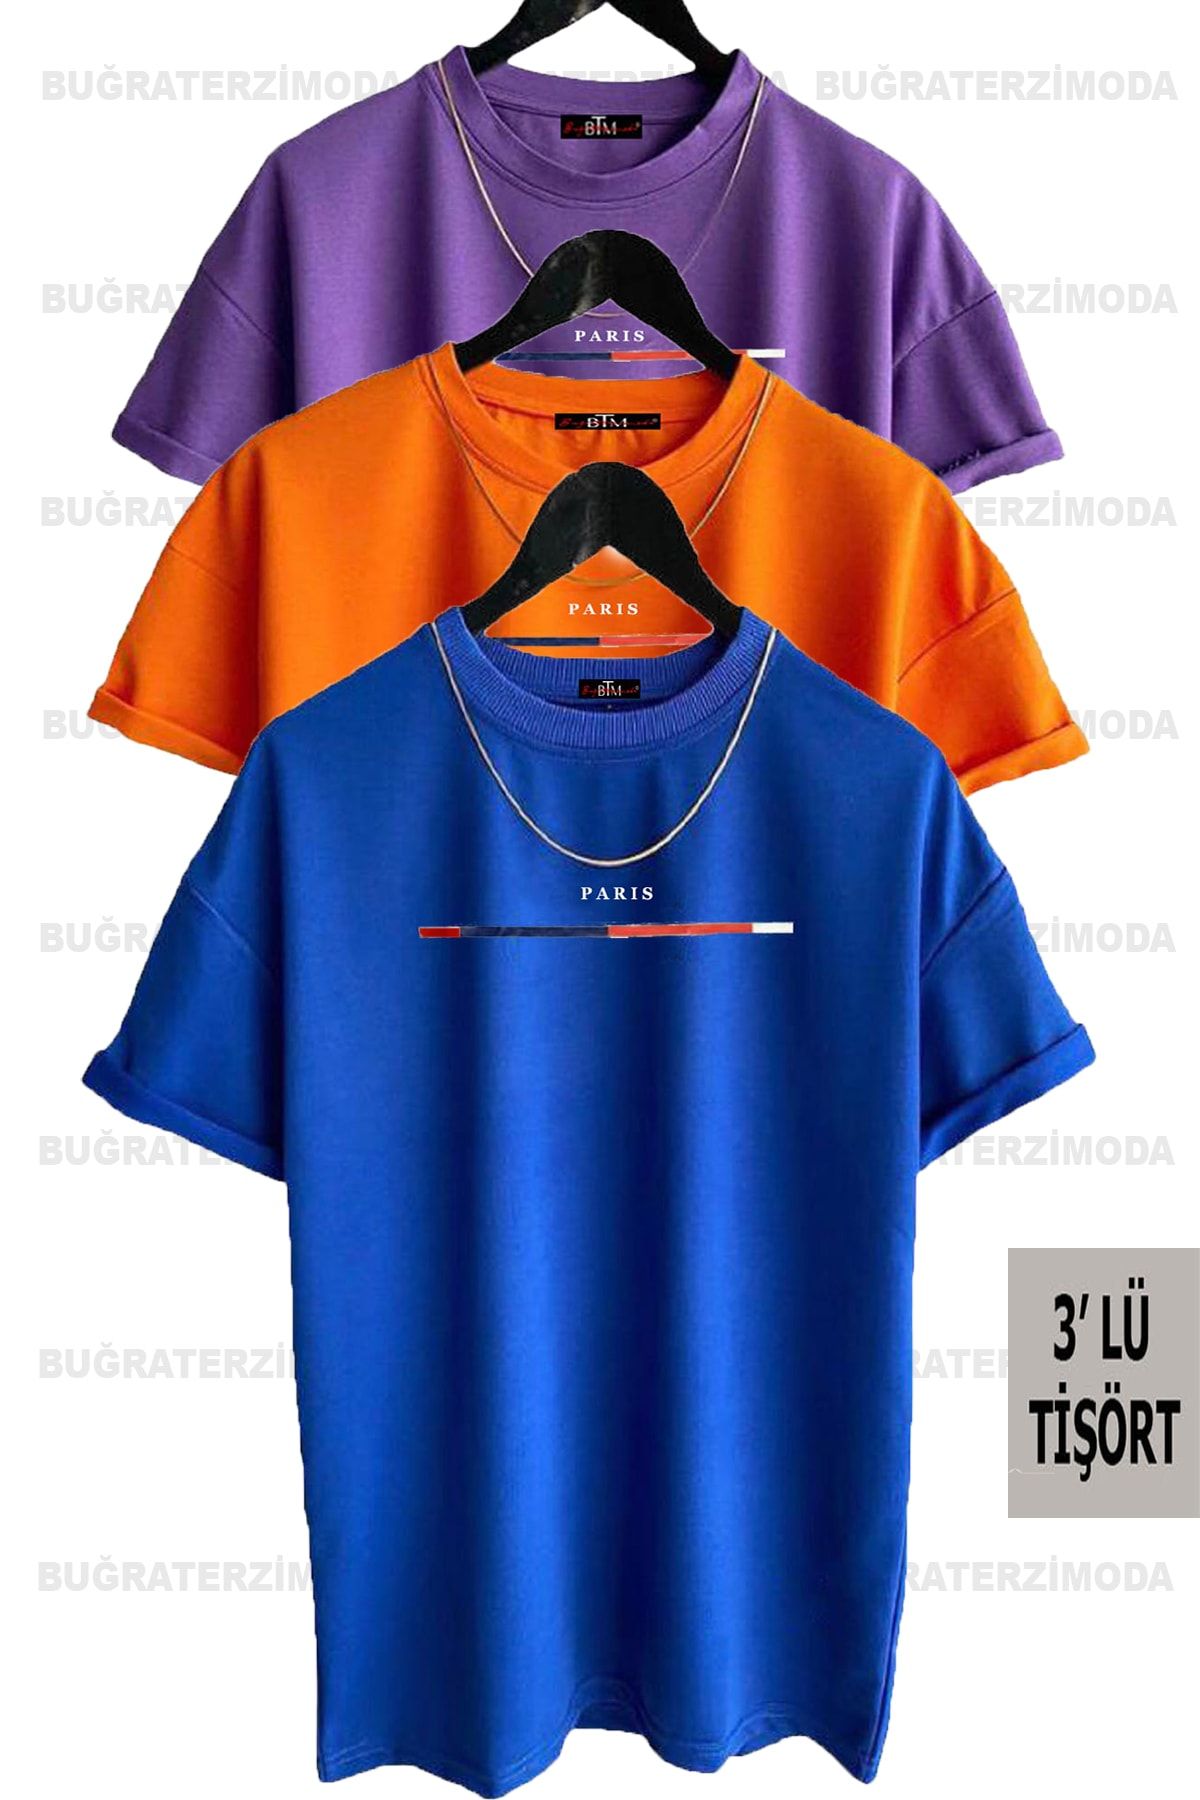 Buğraterzimoda Unisex Ince Çizgili Paris Baskılı Bol Kalıp (mor-turuncu-saks Mavisi) Oversize 3'lü T-shirt